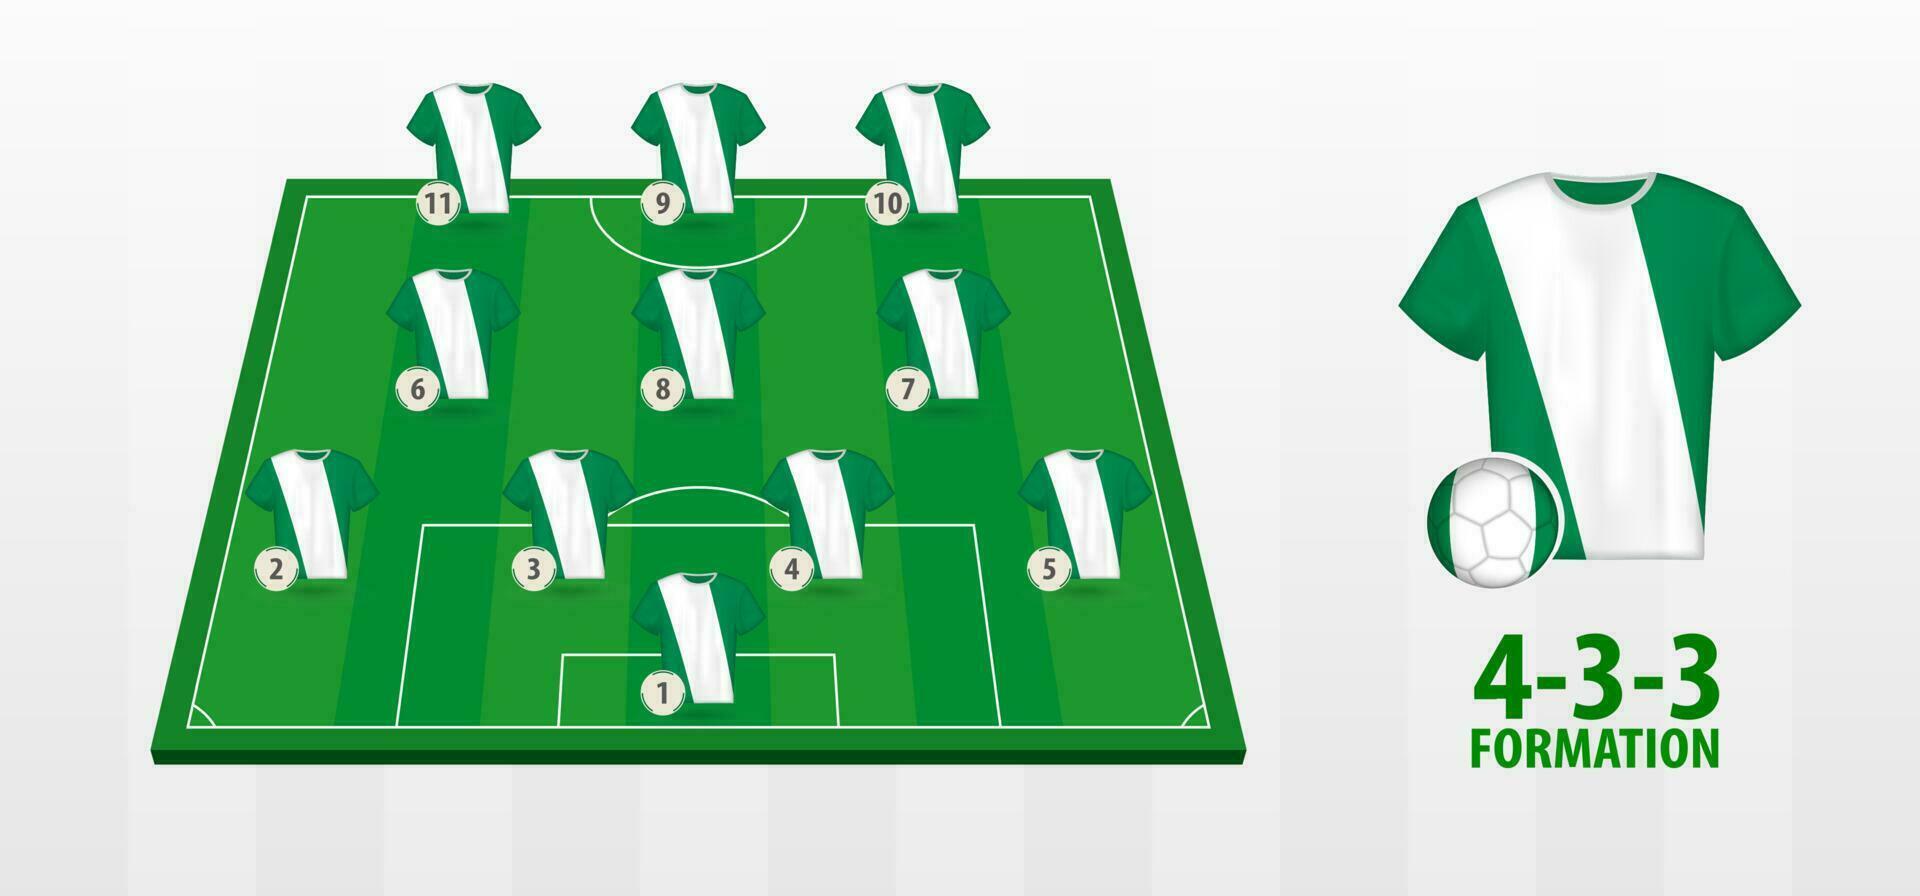 Nigeria National Football Team Formation on Football Field. vector